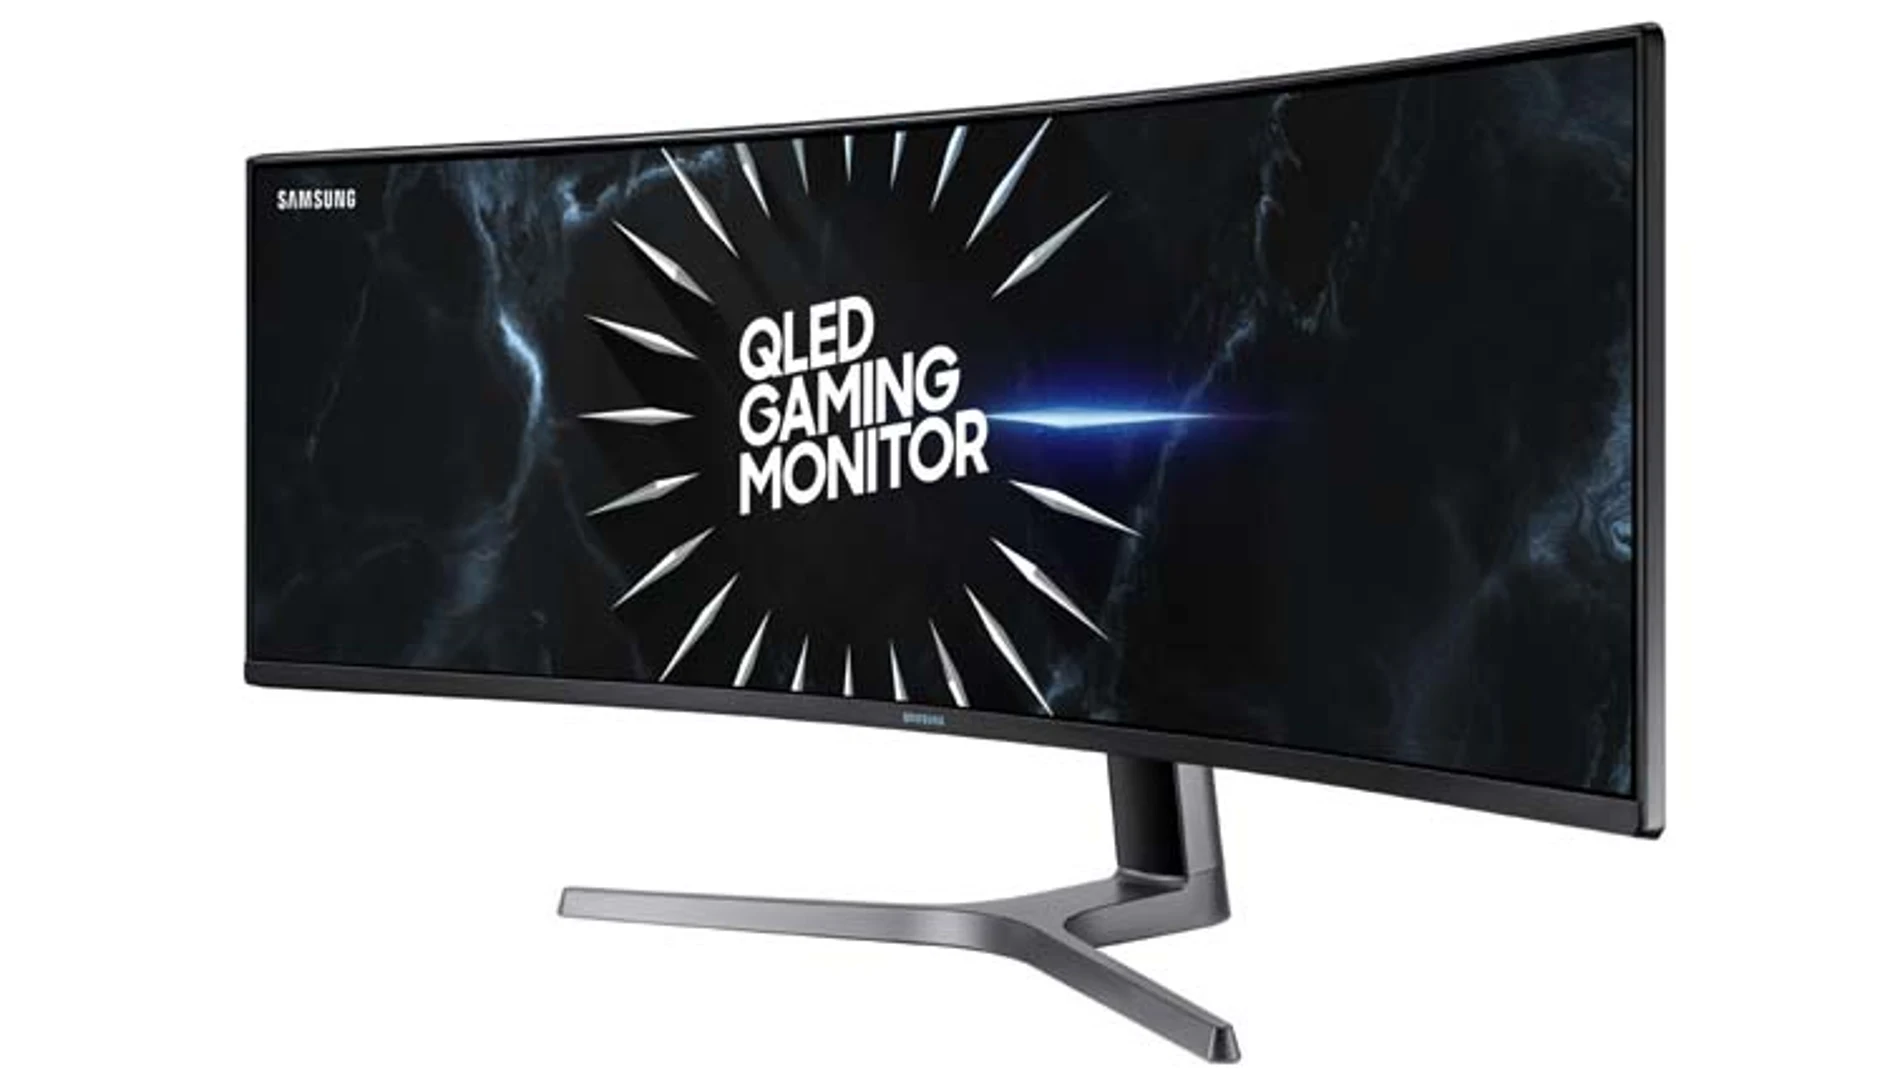 Monitor curvo Samsung de 240Hz Sync Compatible CRG5